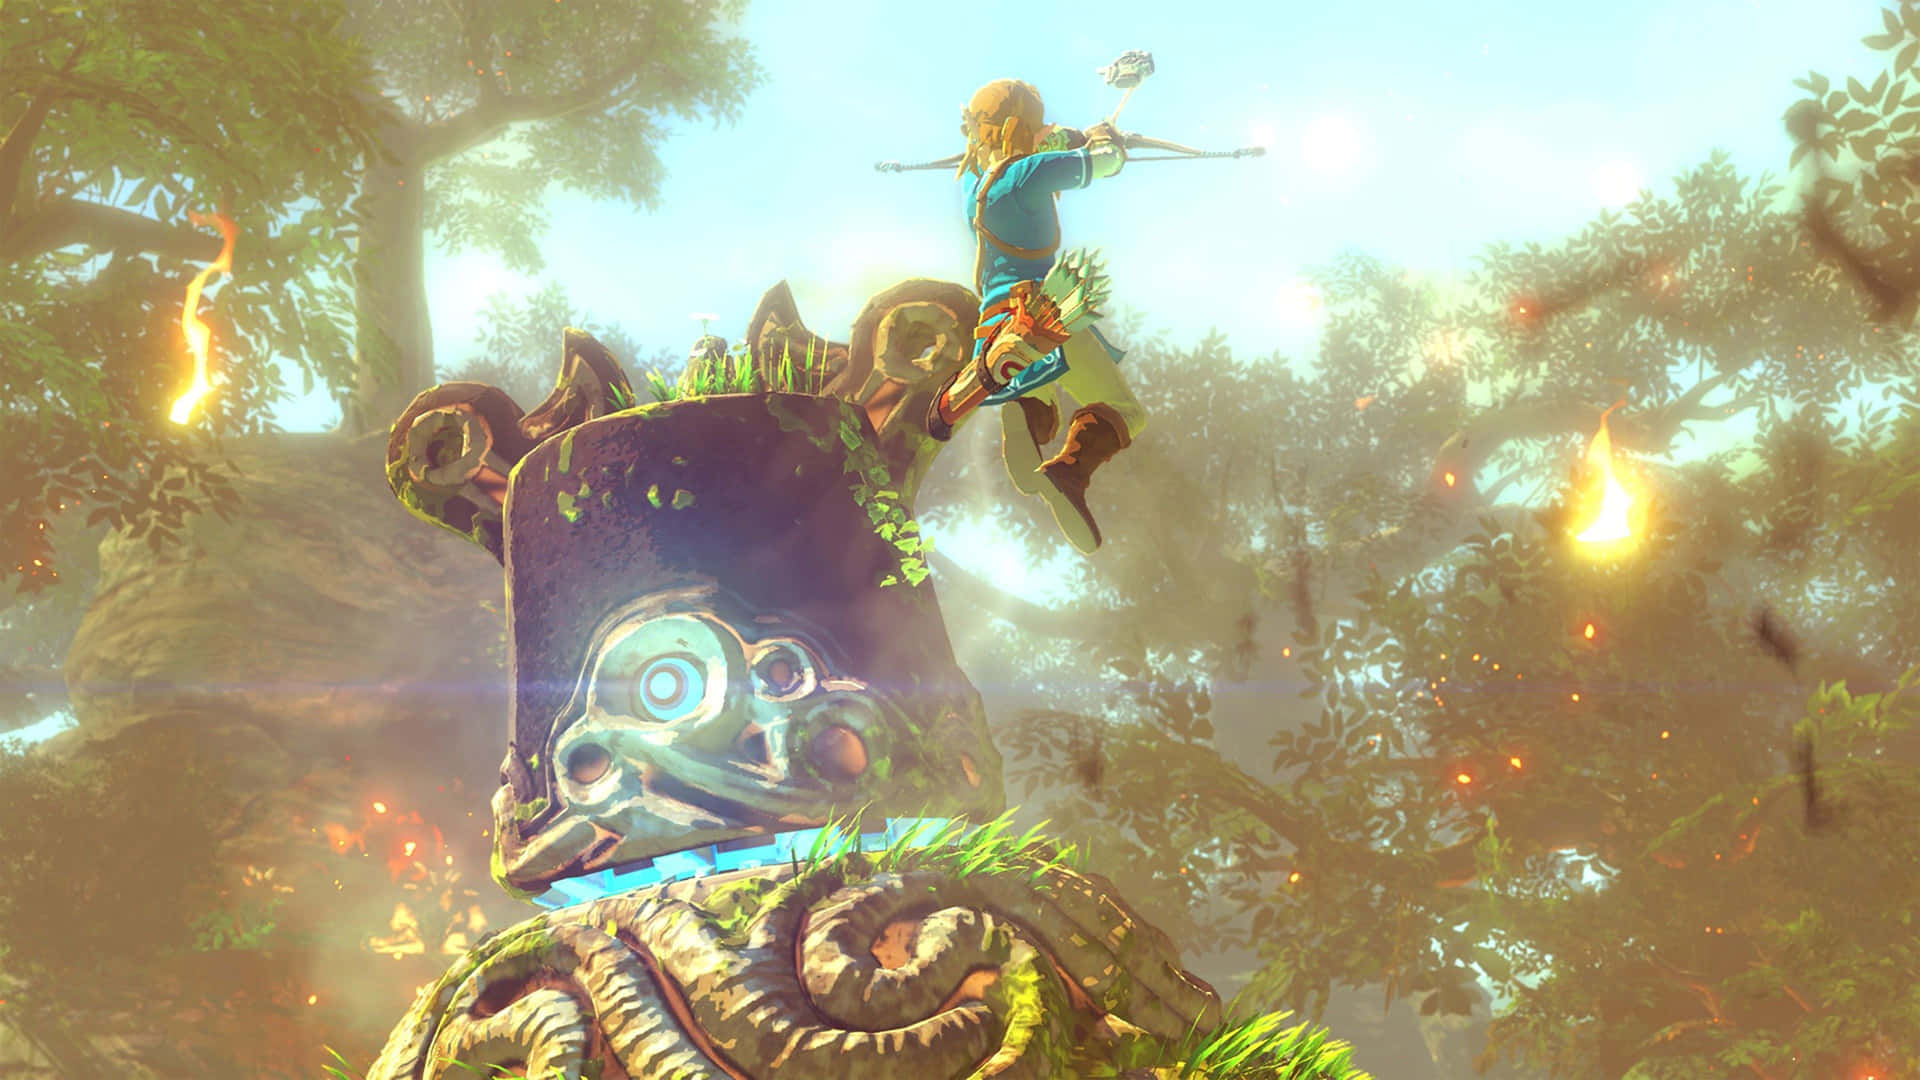 Link,tidens Helt, Der Holder Den Legendariske Tidens Ocarina.